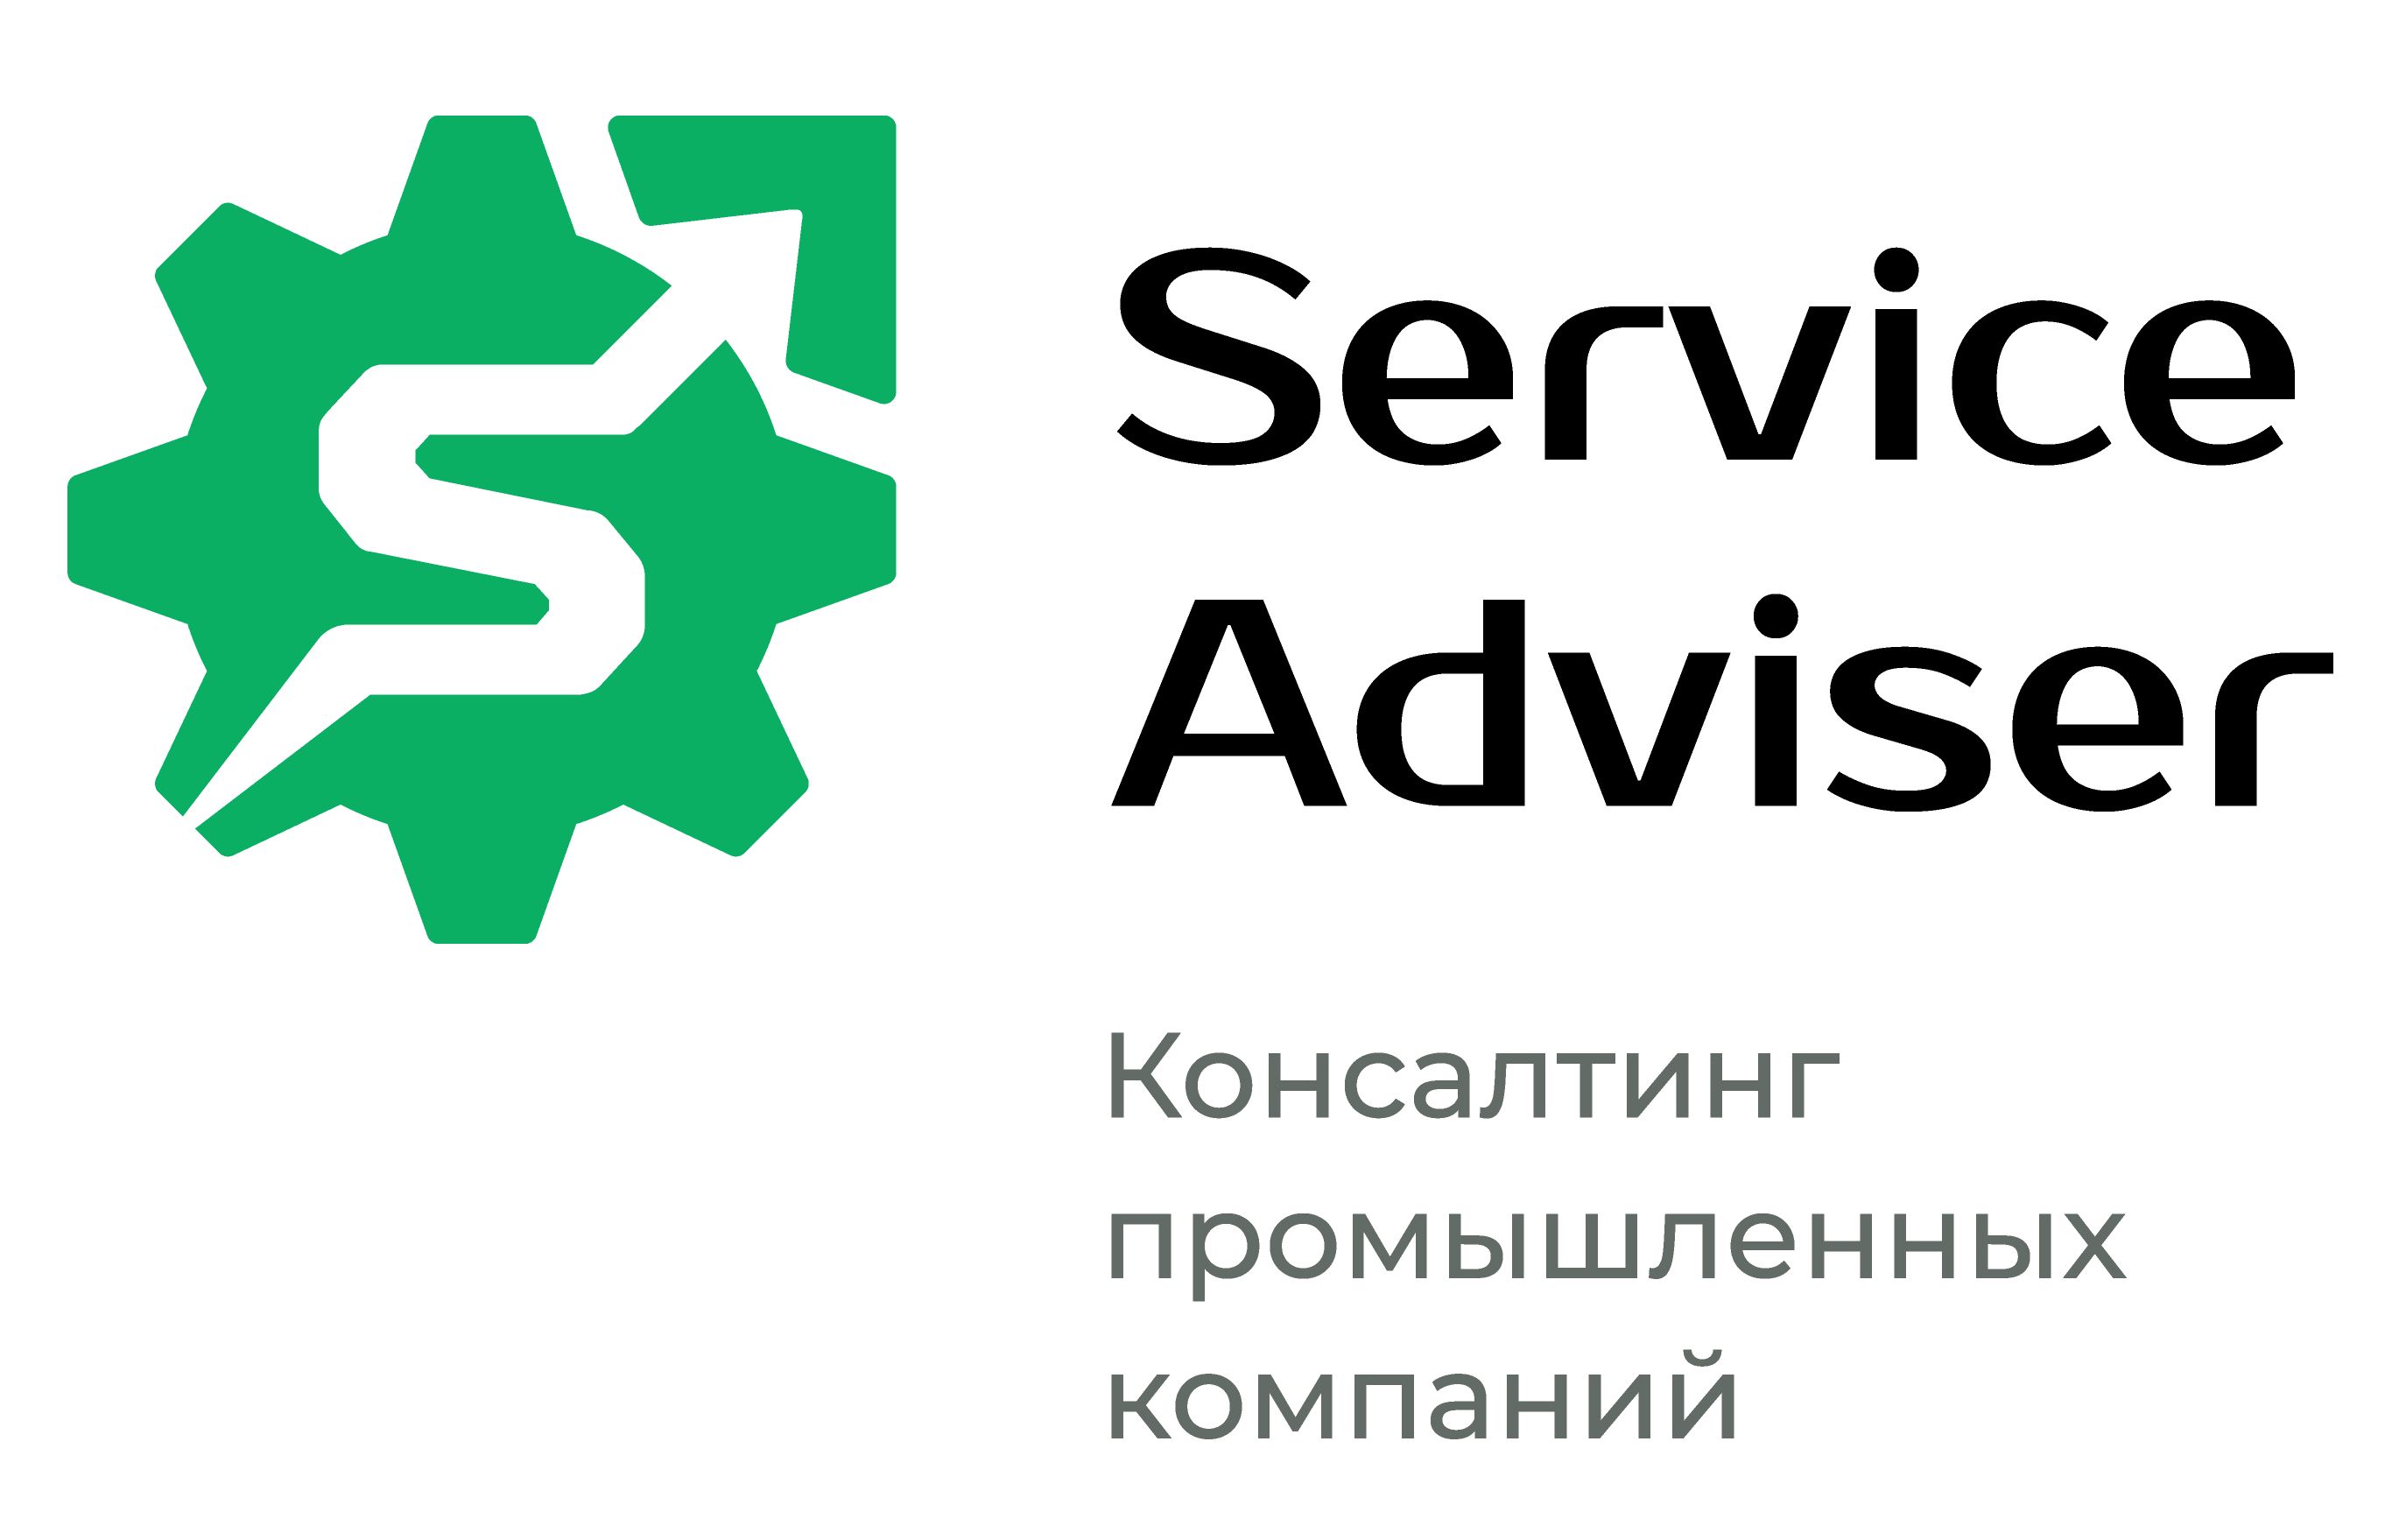 Логотип Service Adviser